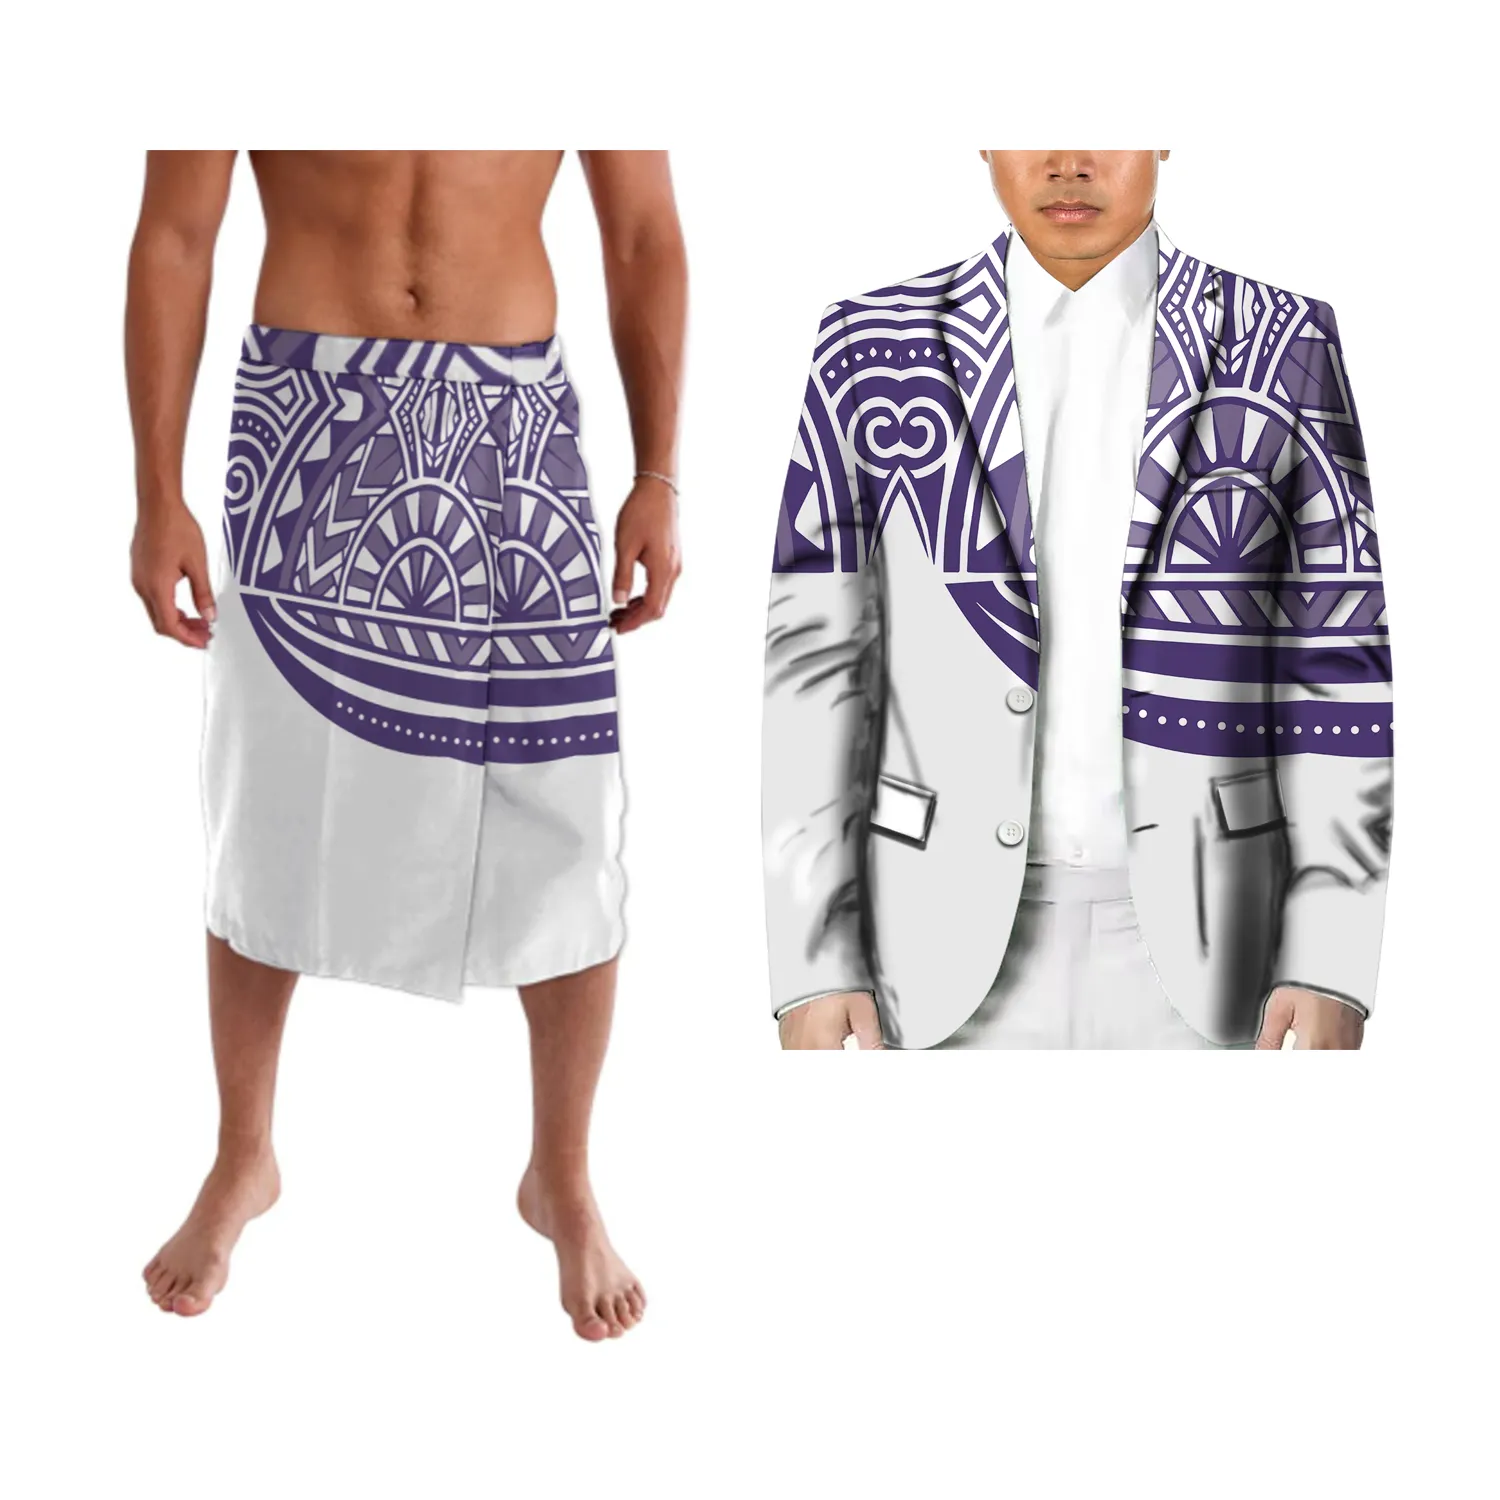 Marka yeni pasifik mirası moda uzun kollu takım ve Ie iki parçalı polinezya kabile tasarım kişilik erkek Blazer için parti